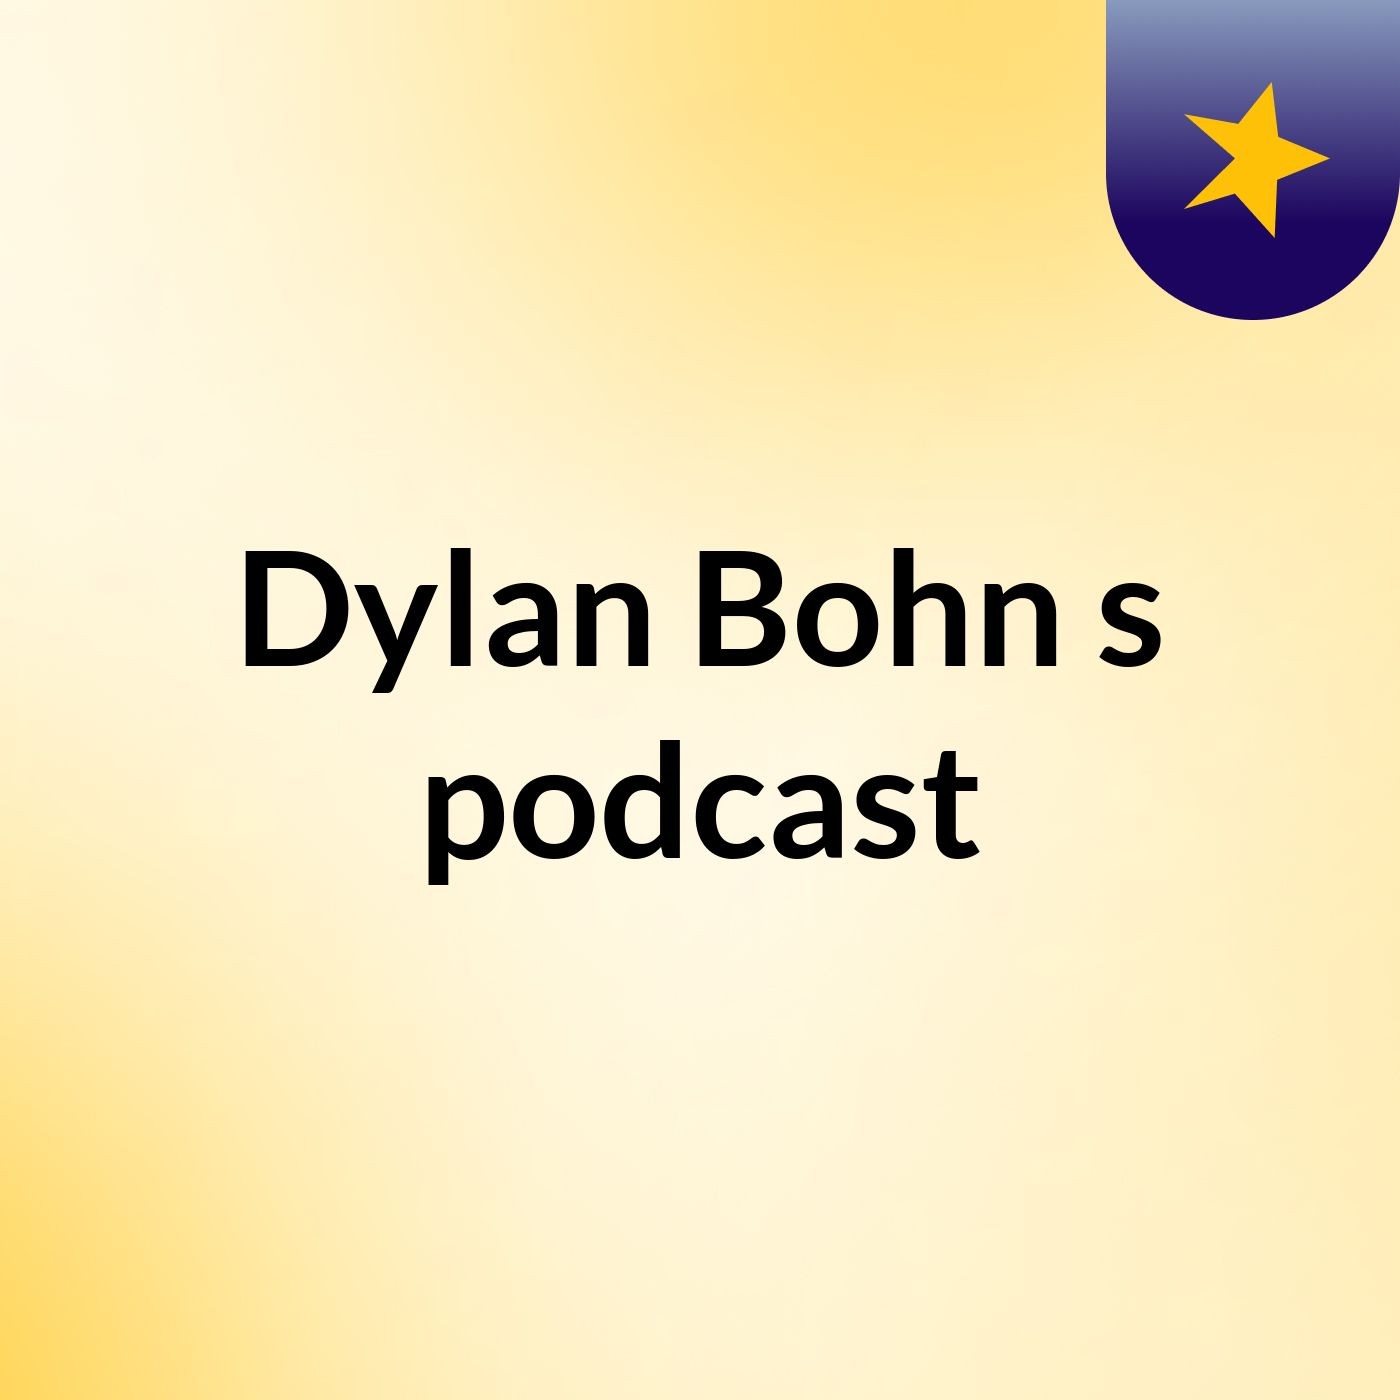 Dylan Bohn's podcast